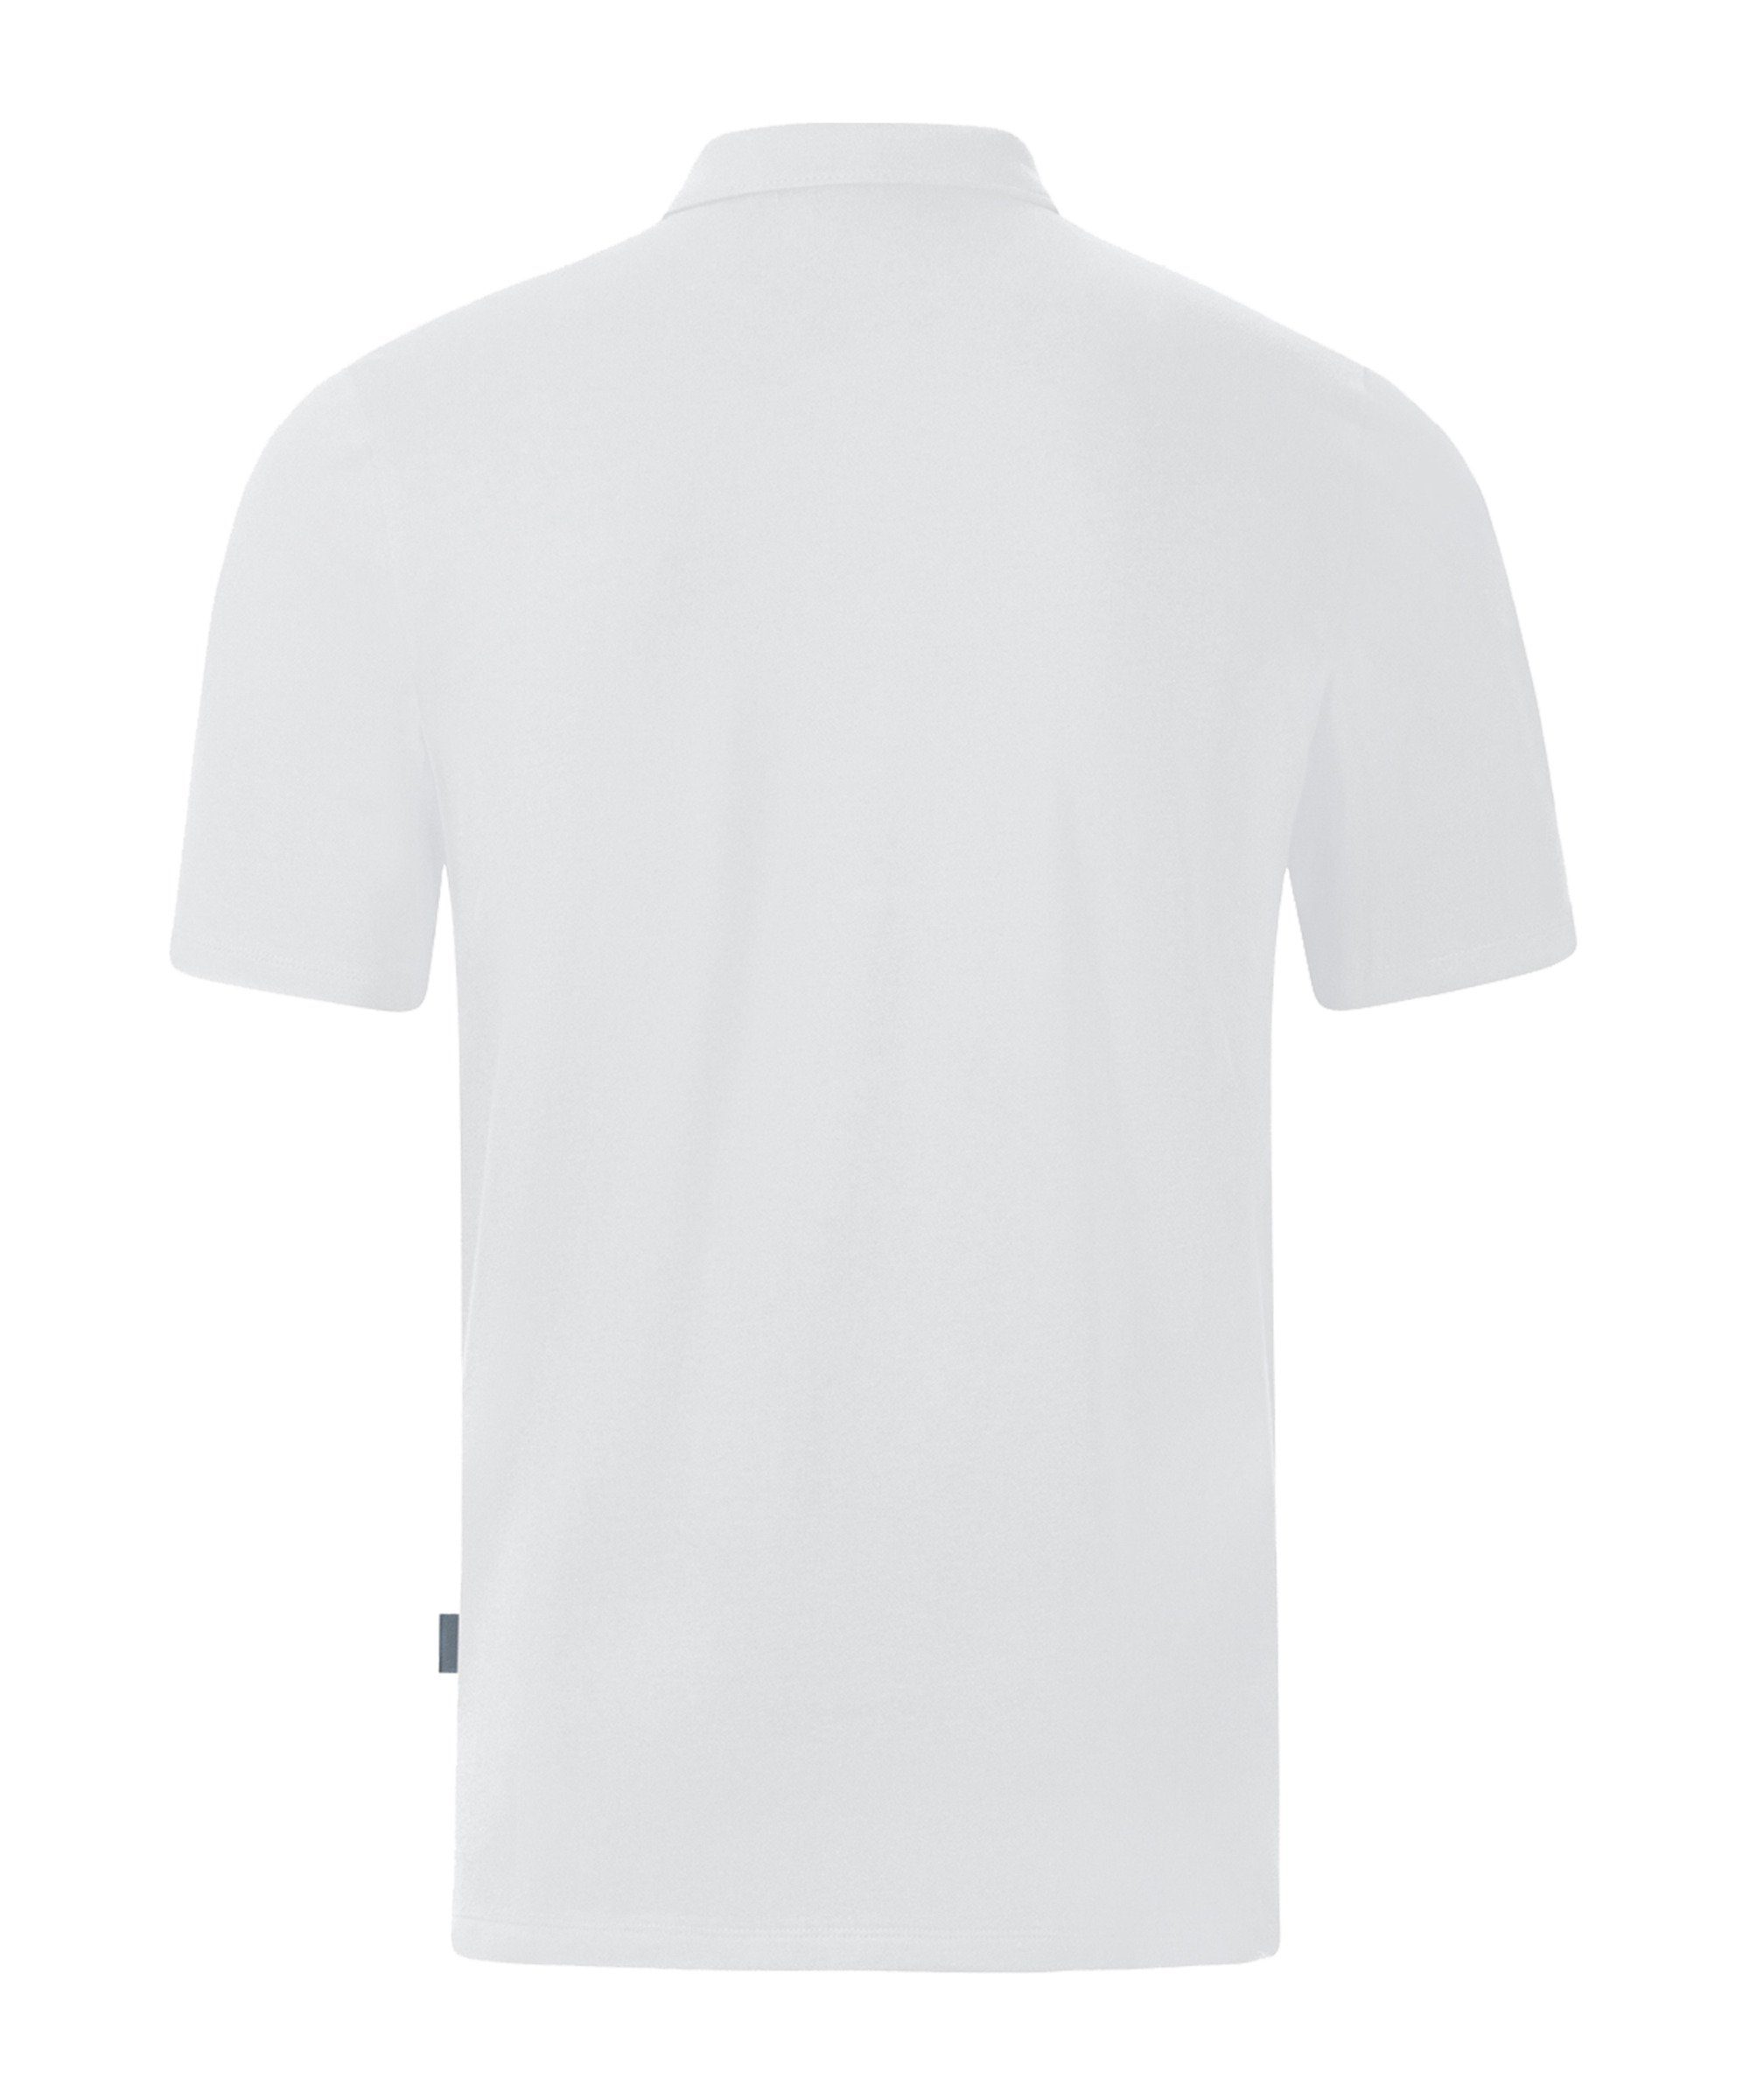 Stretch T-Shirt weiss Shirt Organic Polo default Jako